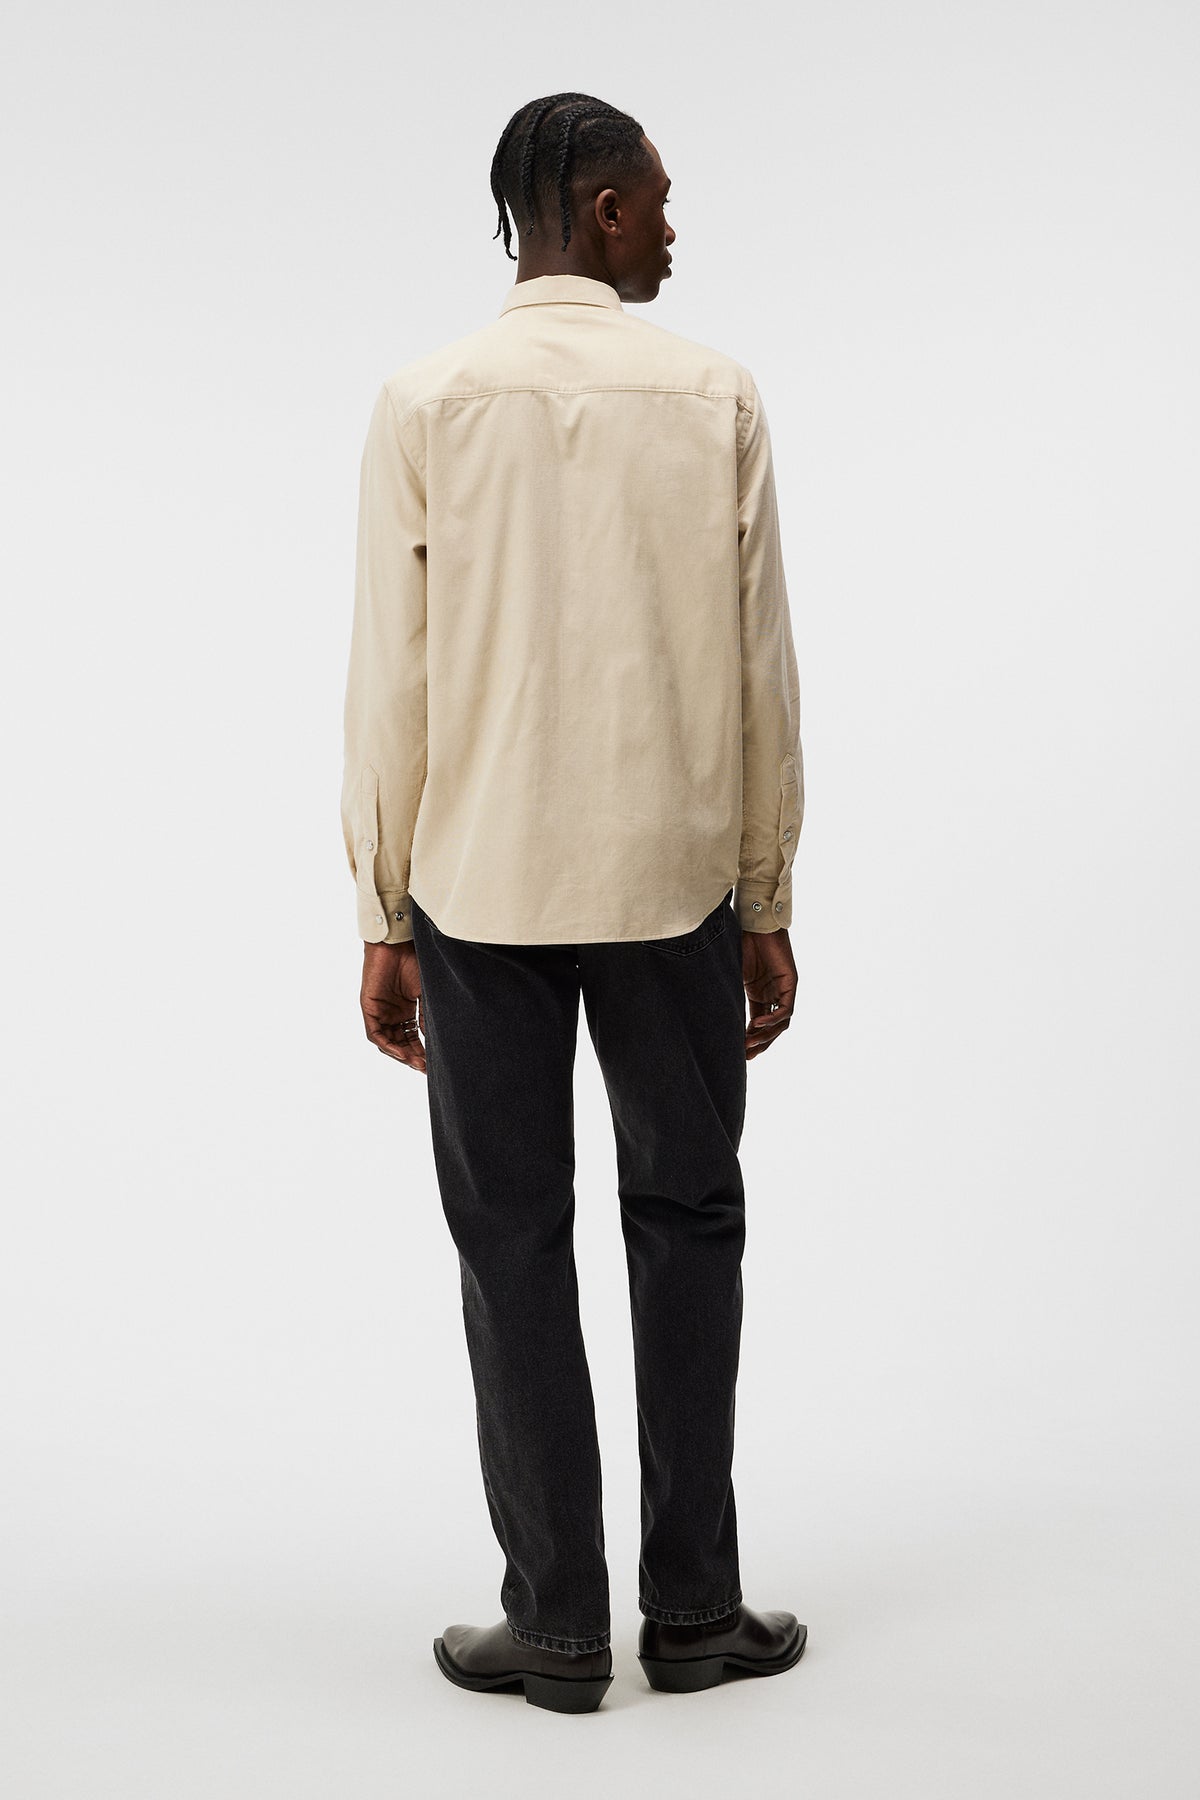 Carlos Reg Cord Shirt / Oyster Gray